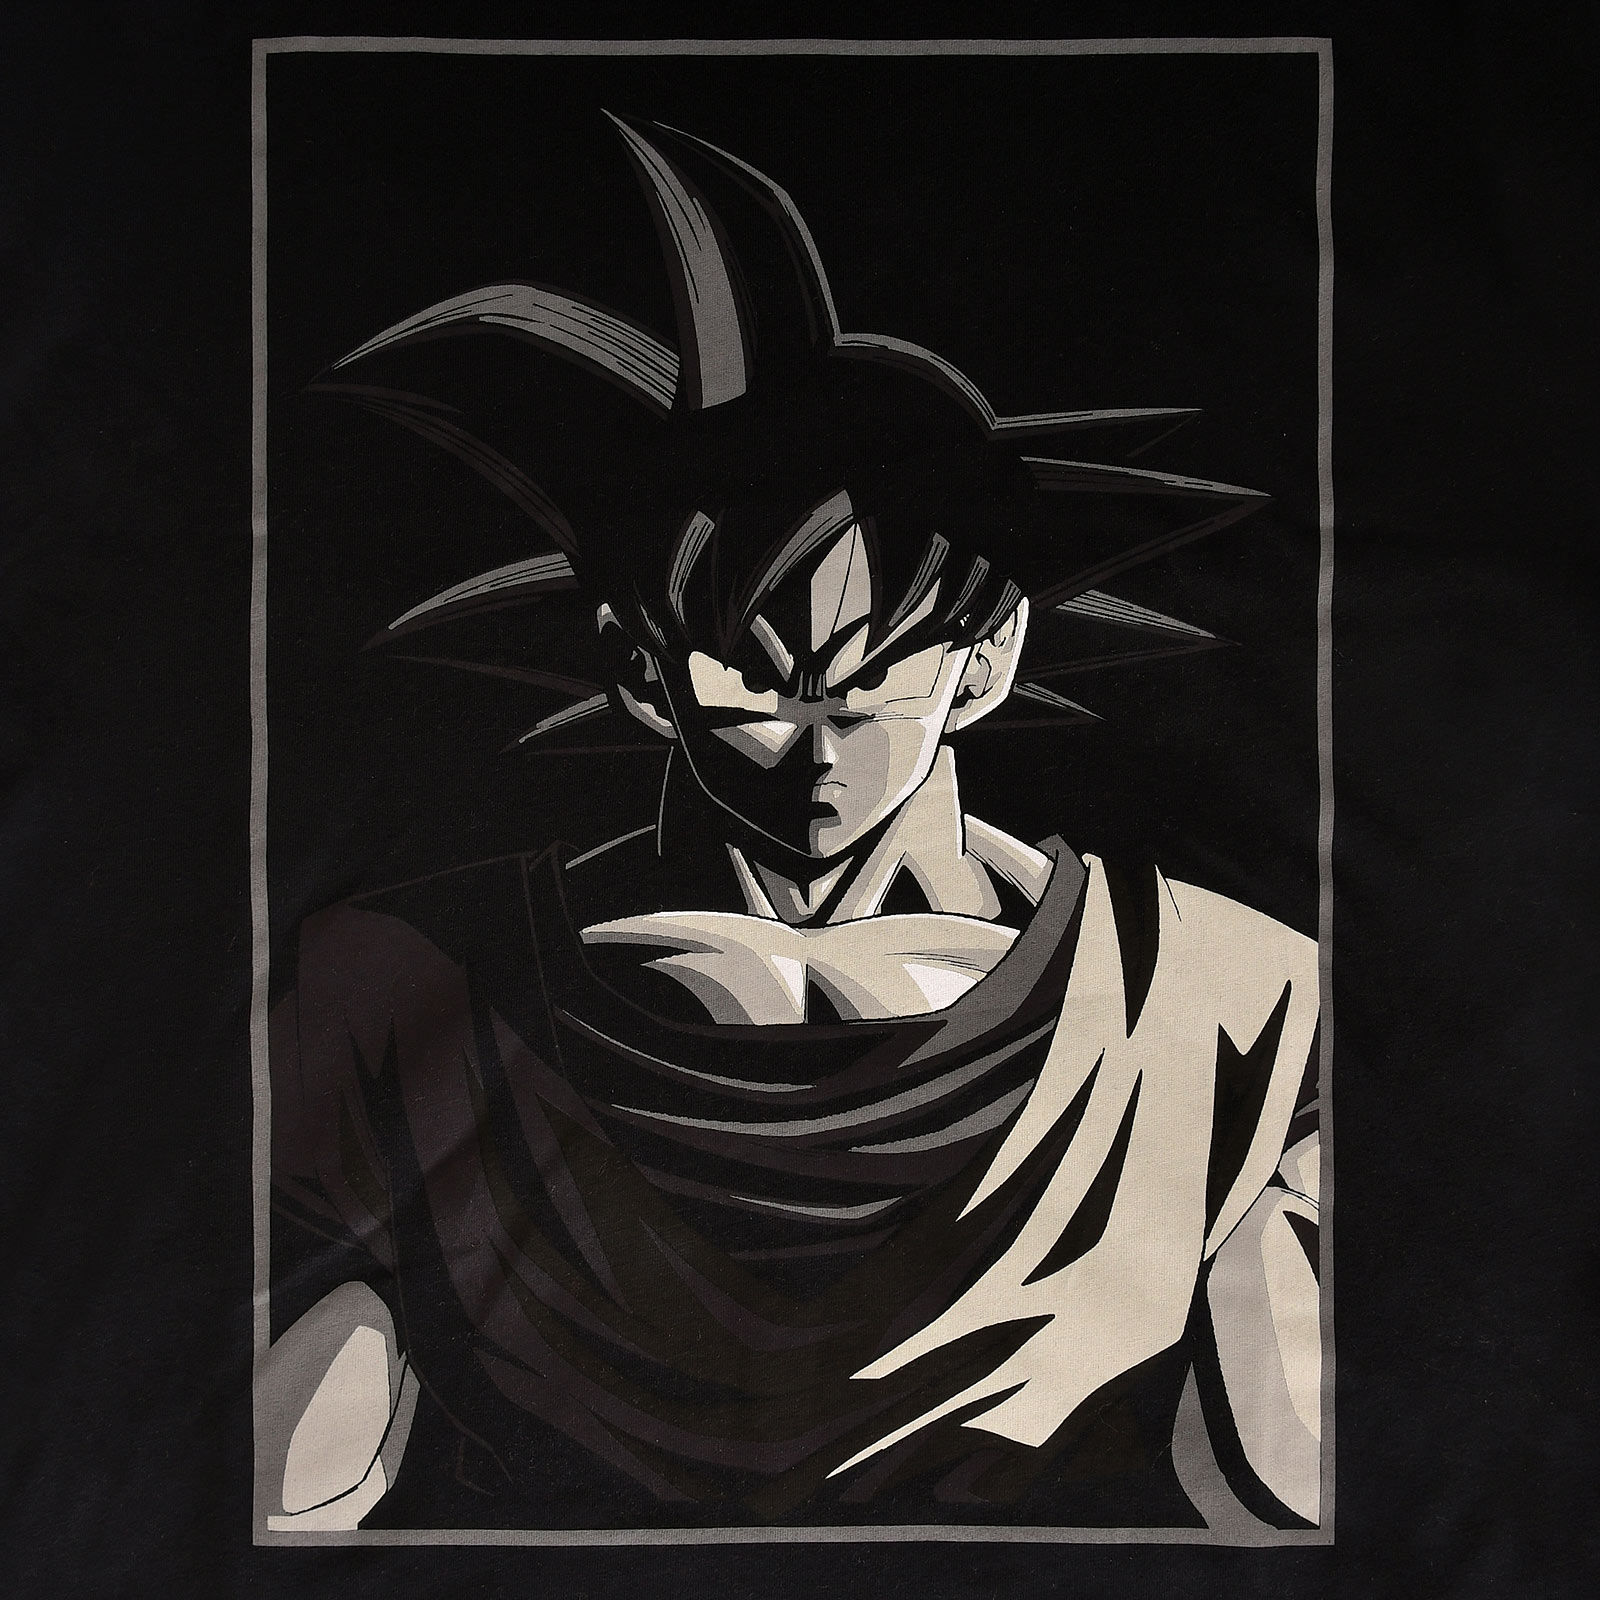 Dragon Ball - T-shirt Goku Manga Face noir